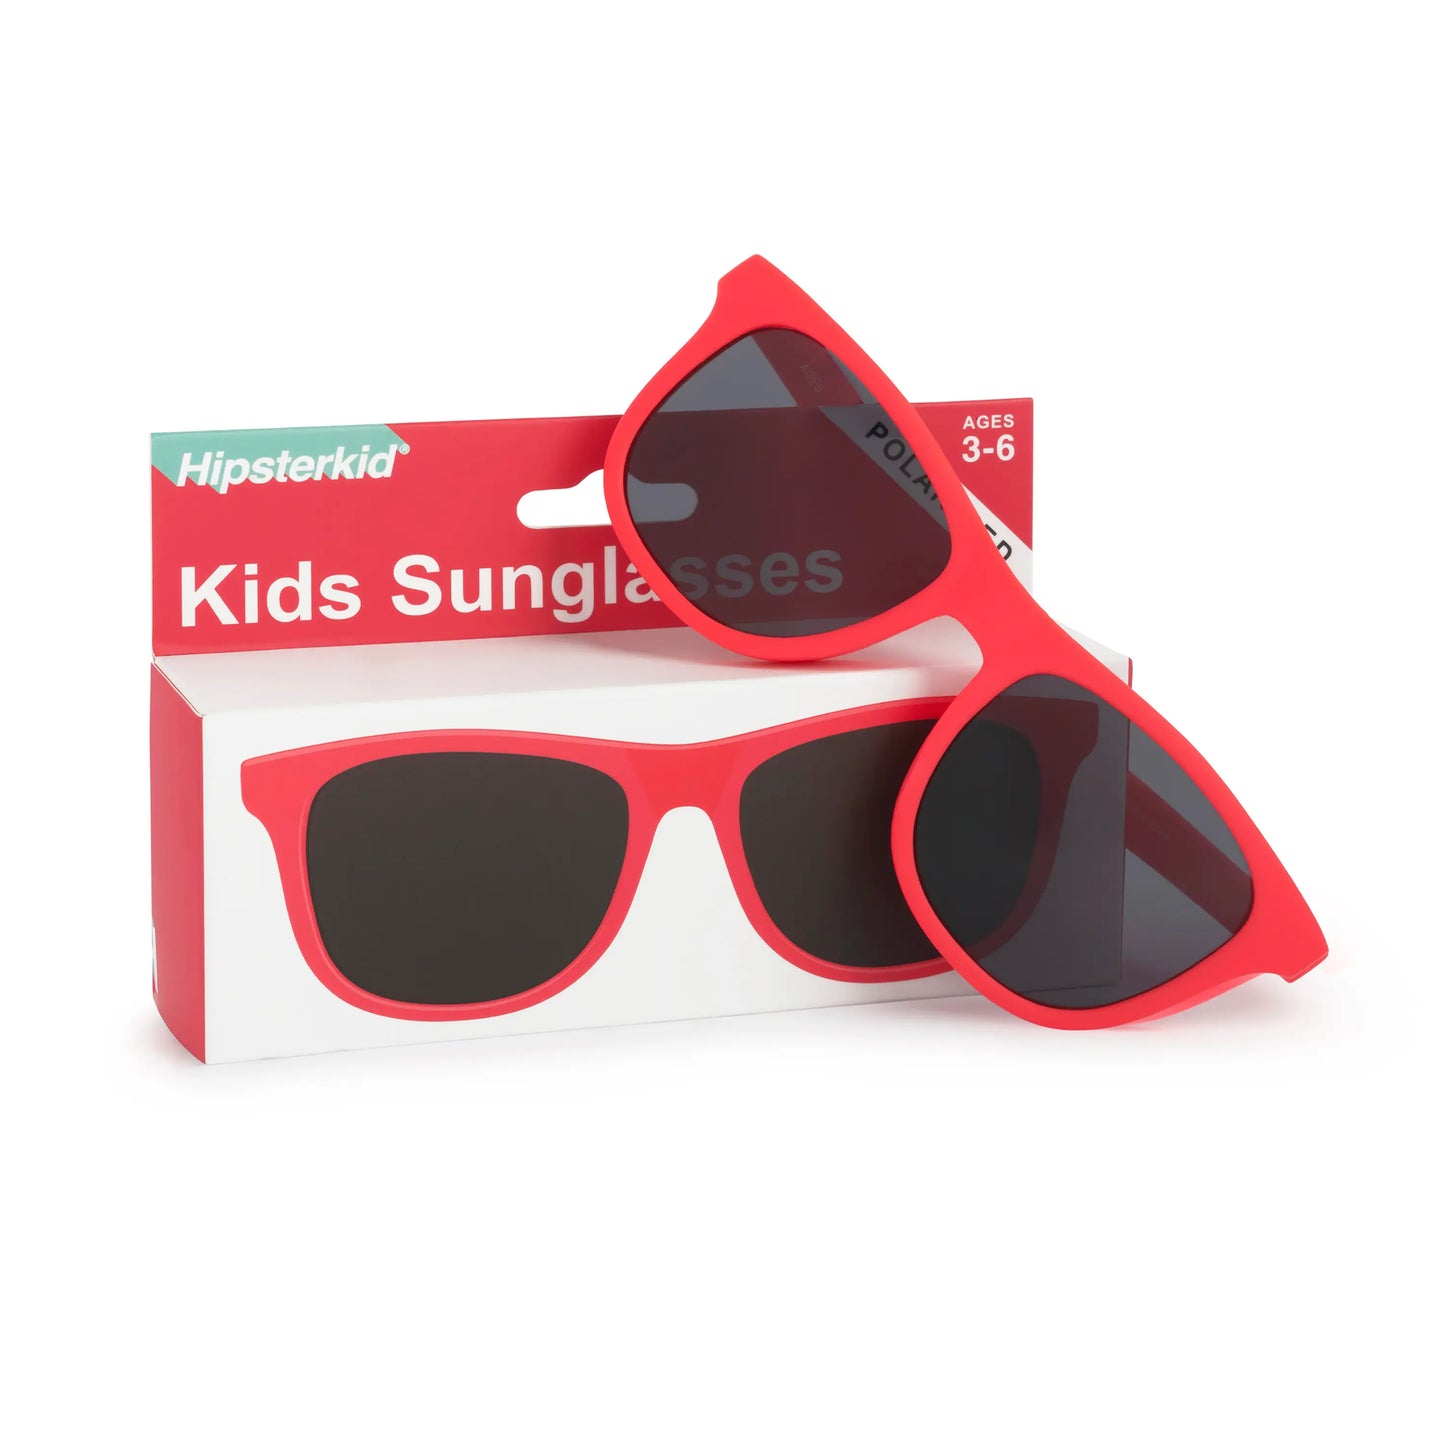 Drifter Sunglasses - Toddler